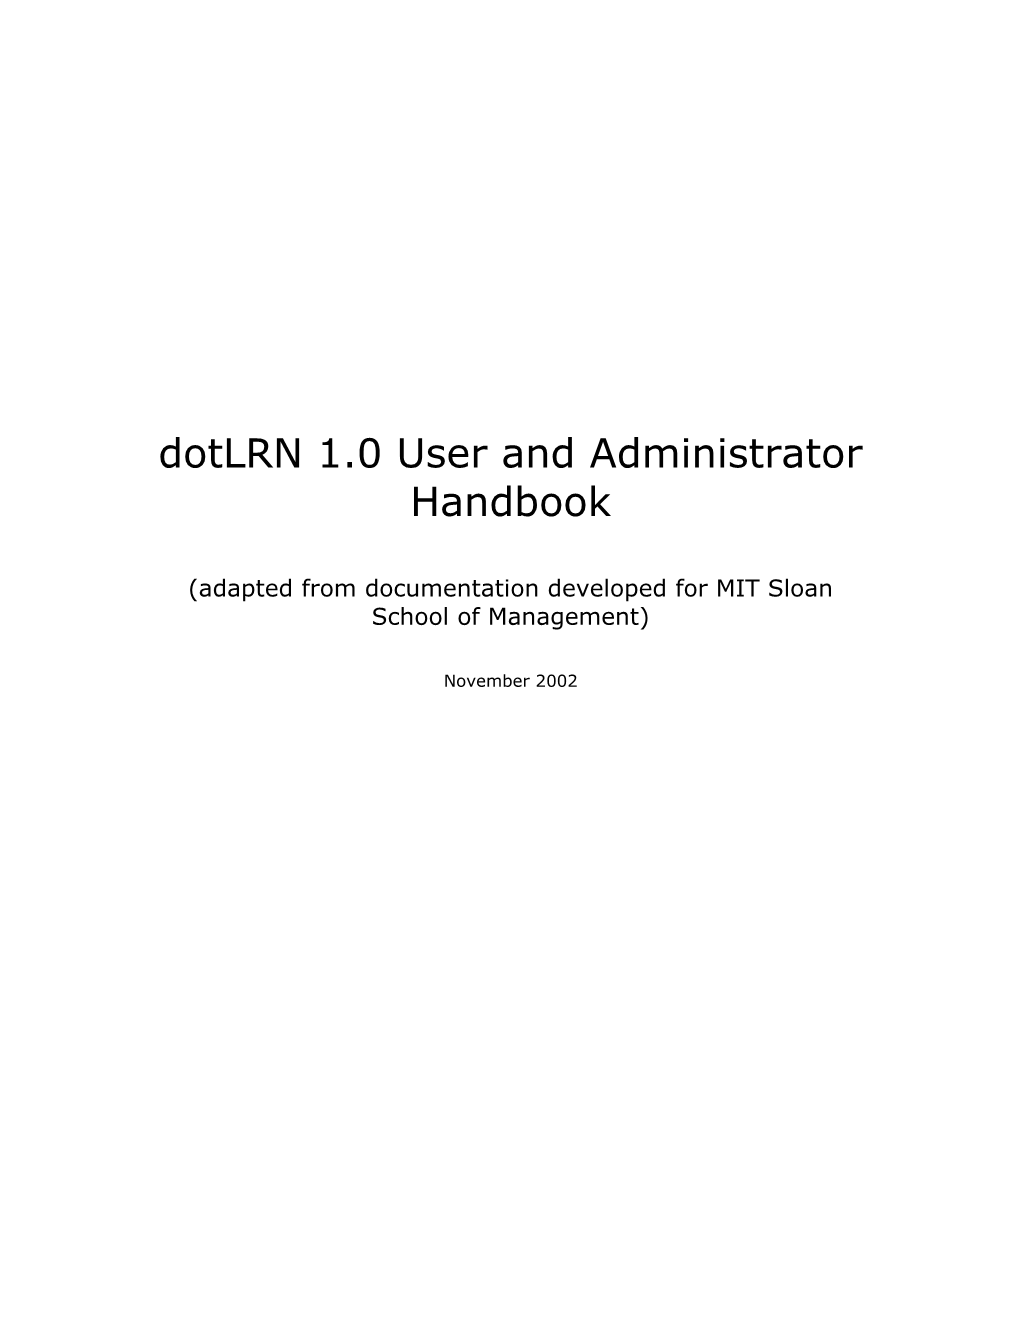 New Outline for Admin Handbook